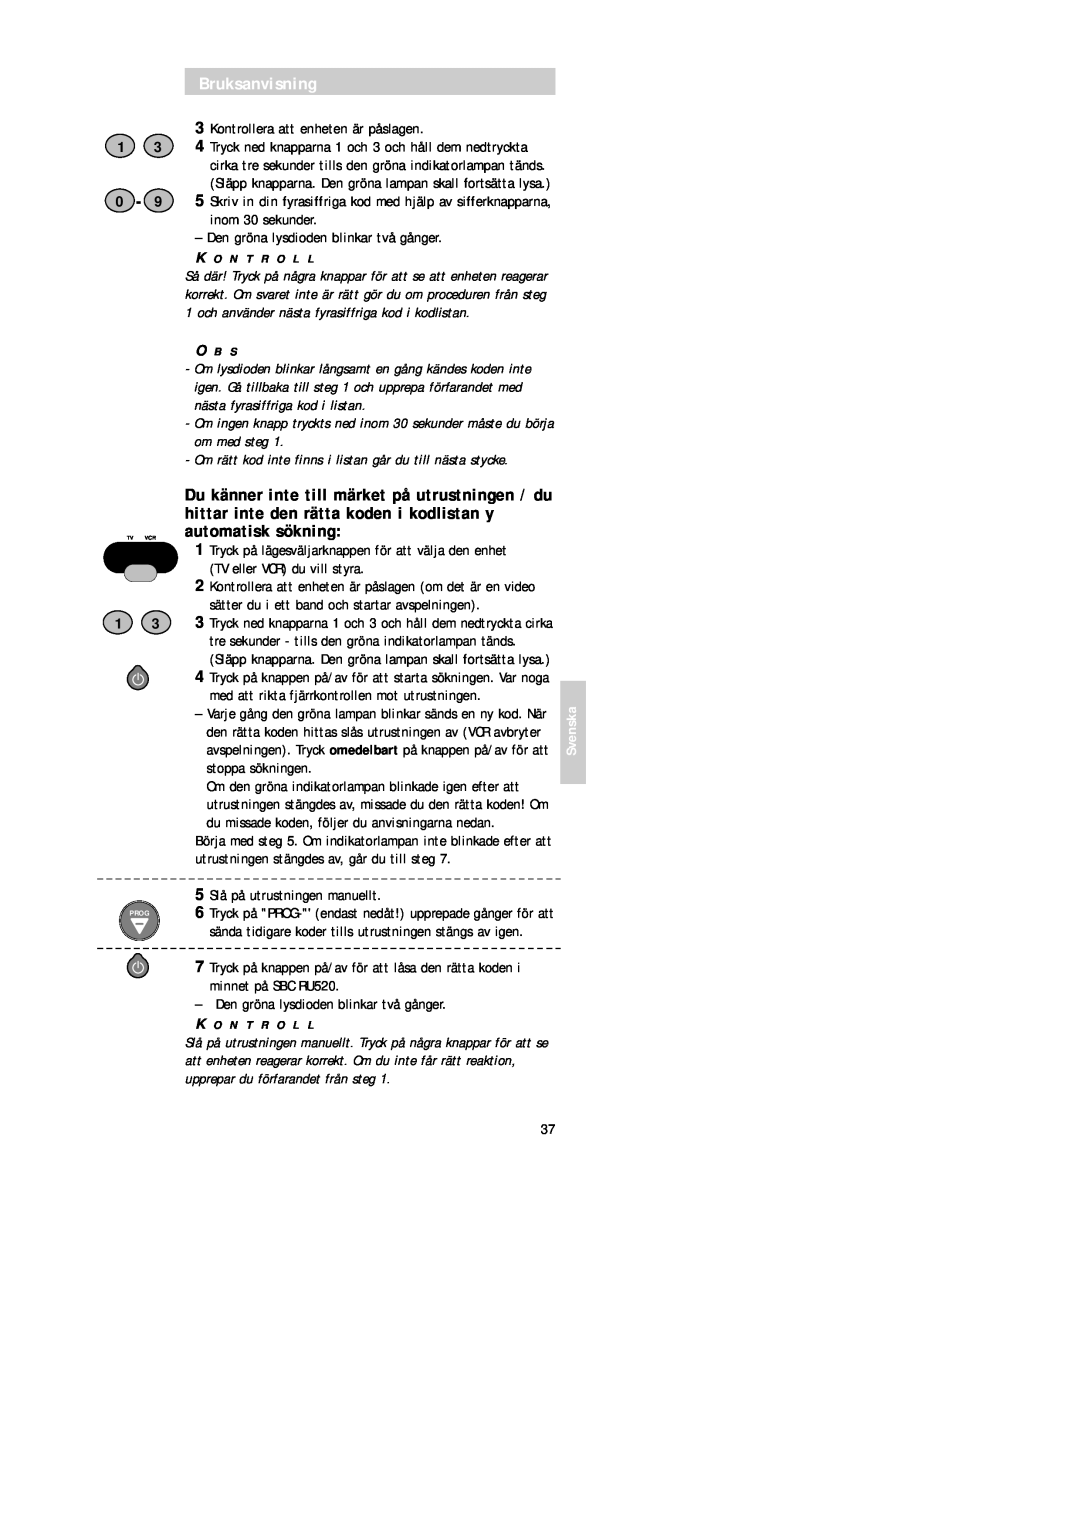 Philips SBC RU 520 manual Bruksanvisning, Om rätt kod inte finns i listan går du till nästa stycke 